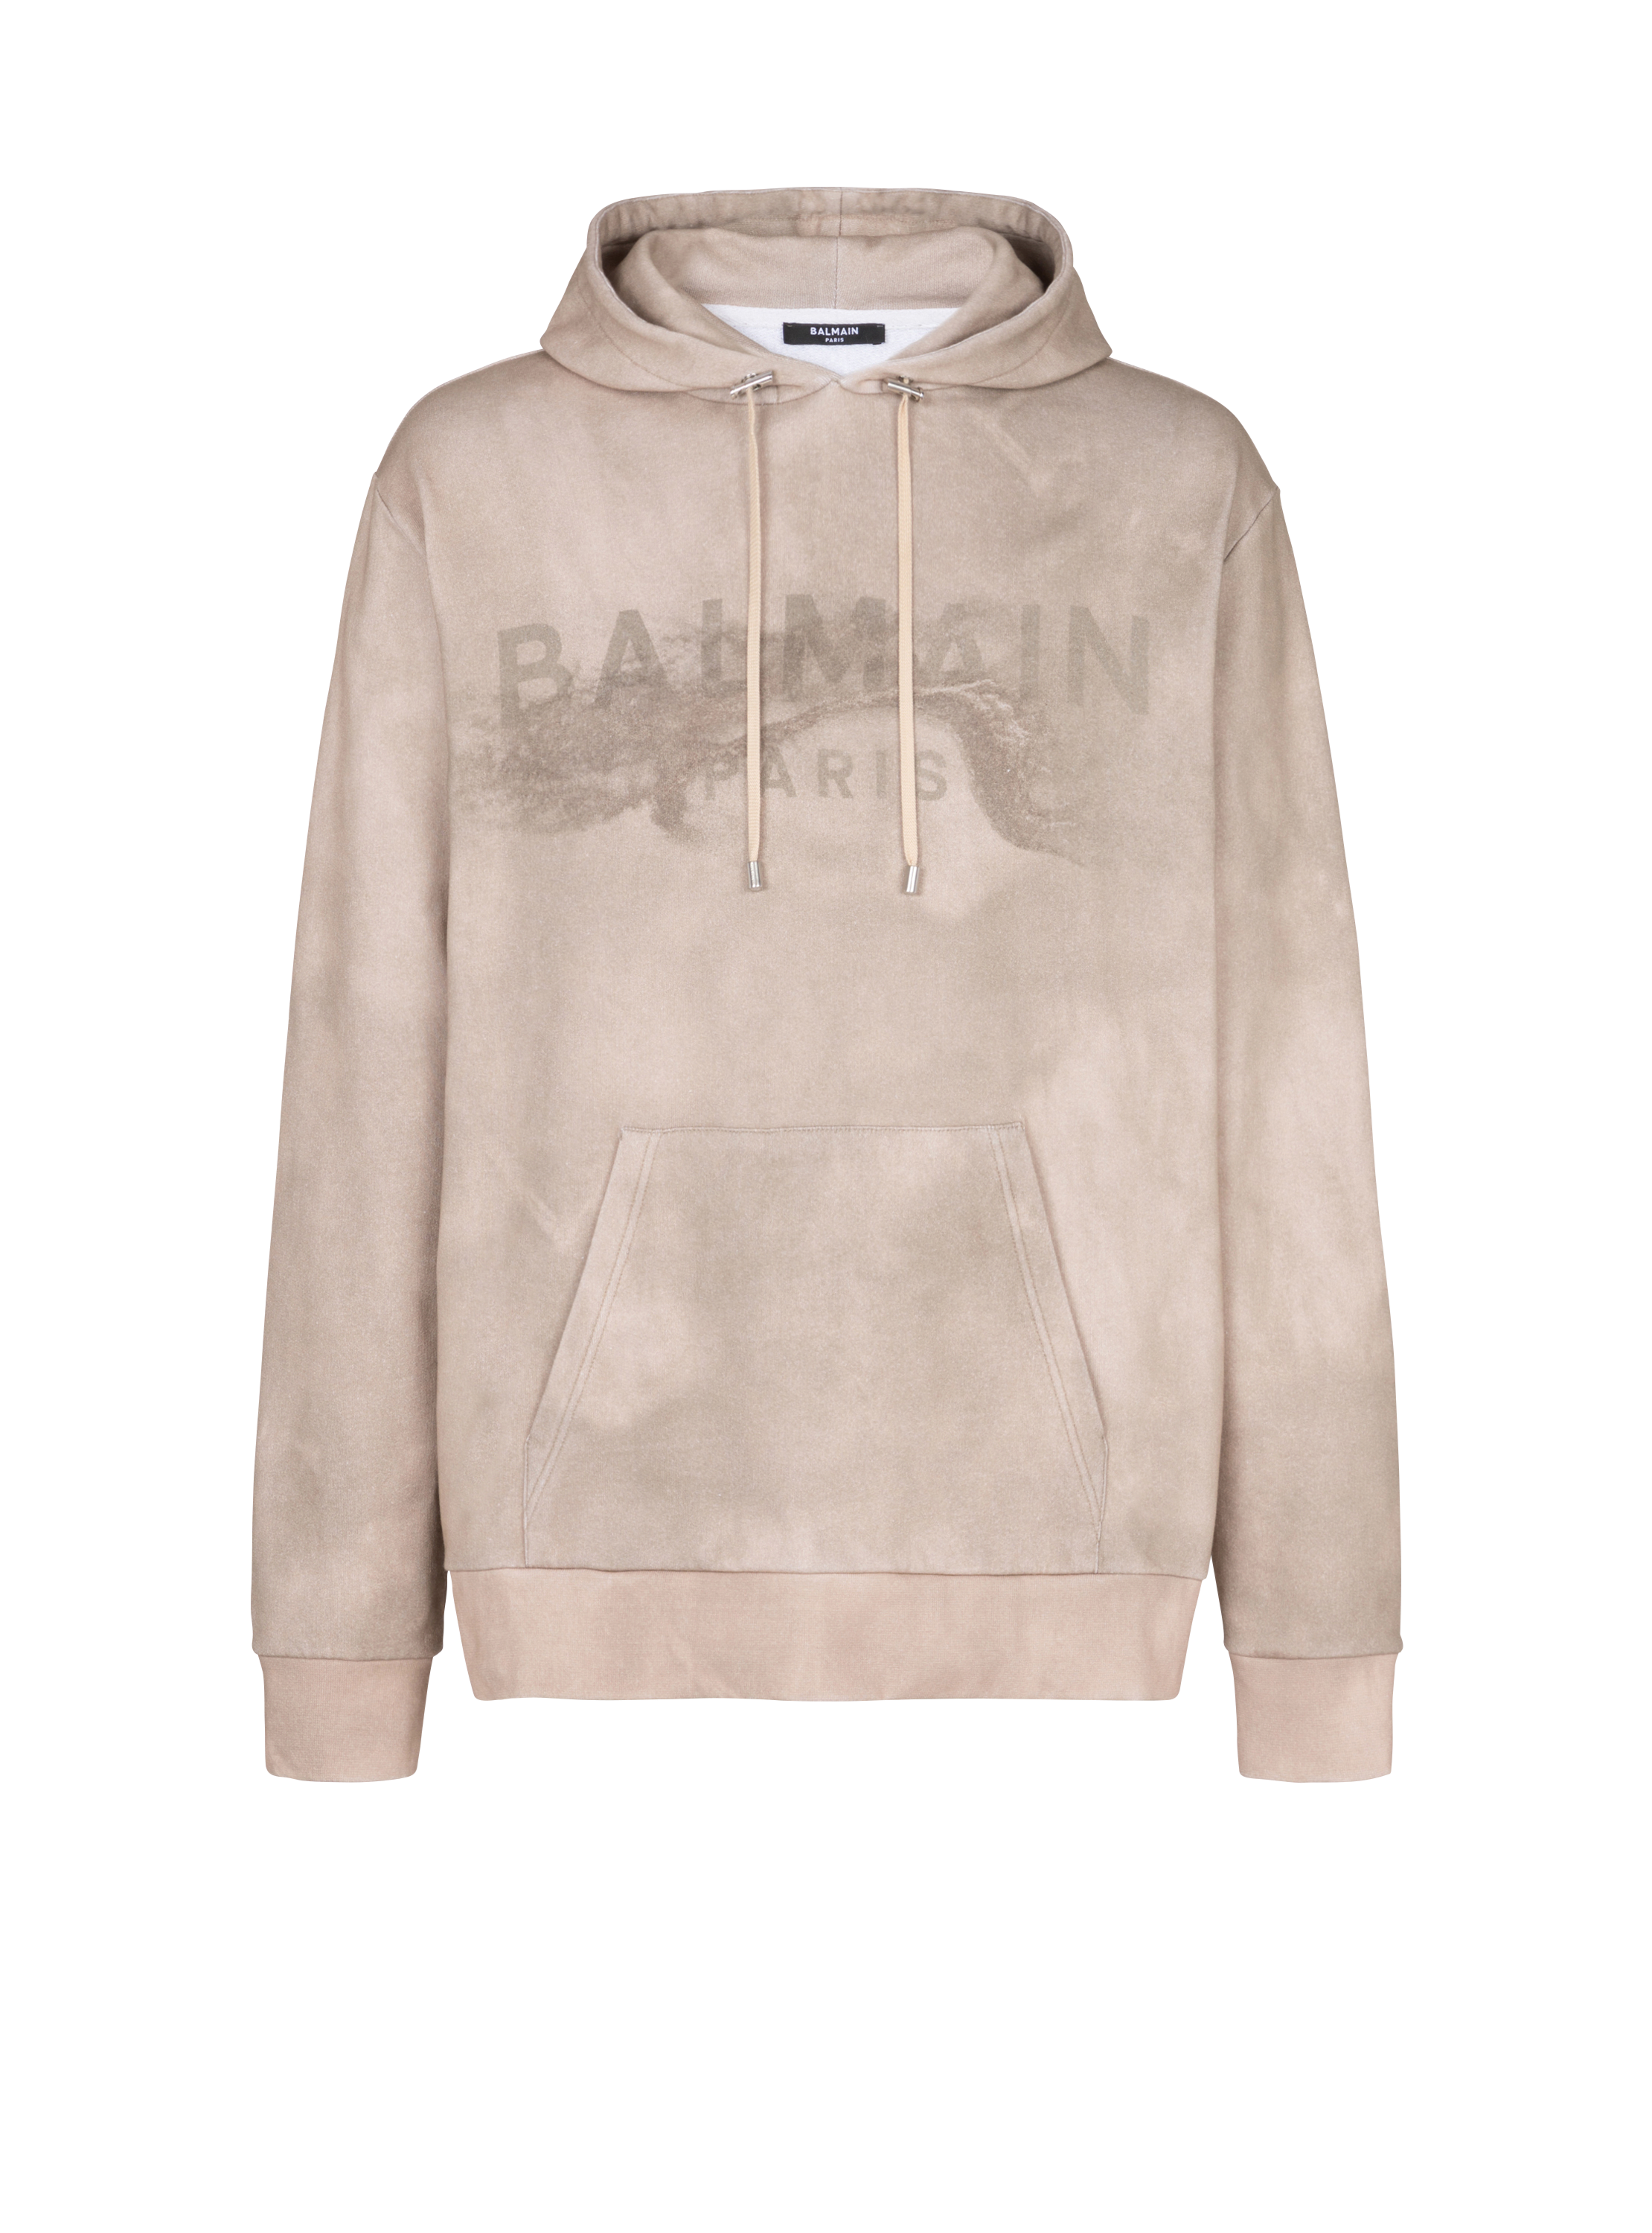 Sweat à capuche en coton éco-responsable imprimé logo Balmain Paris désert, beige, hi-res